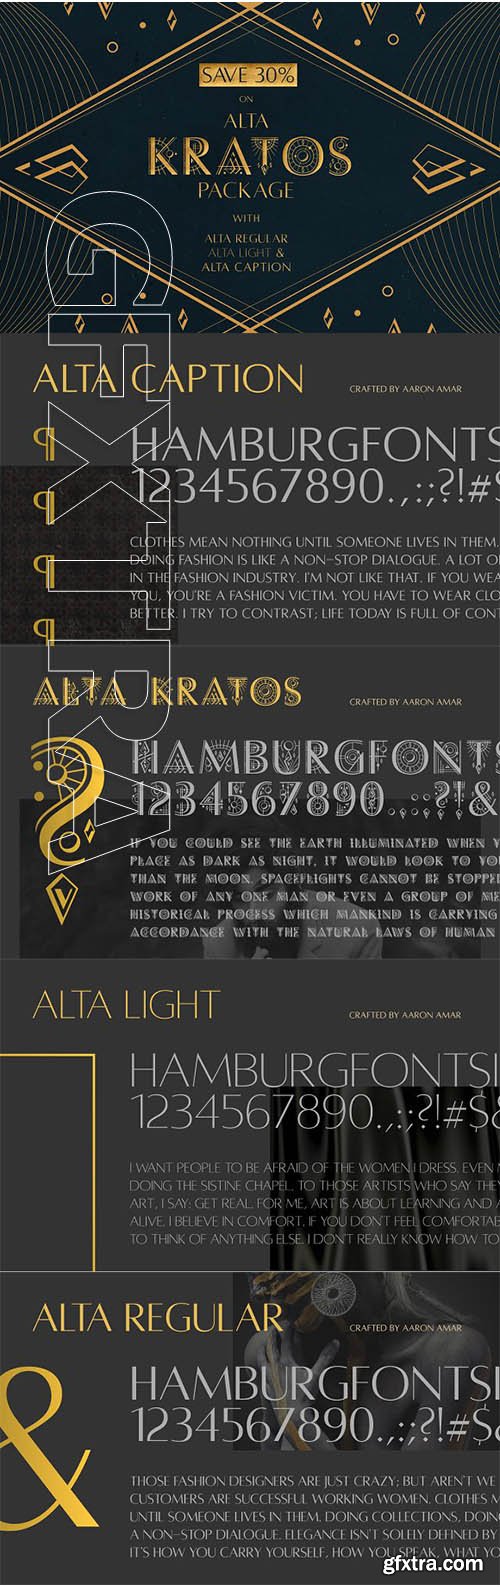 CreativeMarket - Alta Kratos Package (+3) 2335057